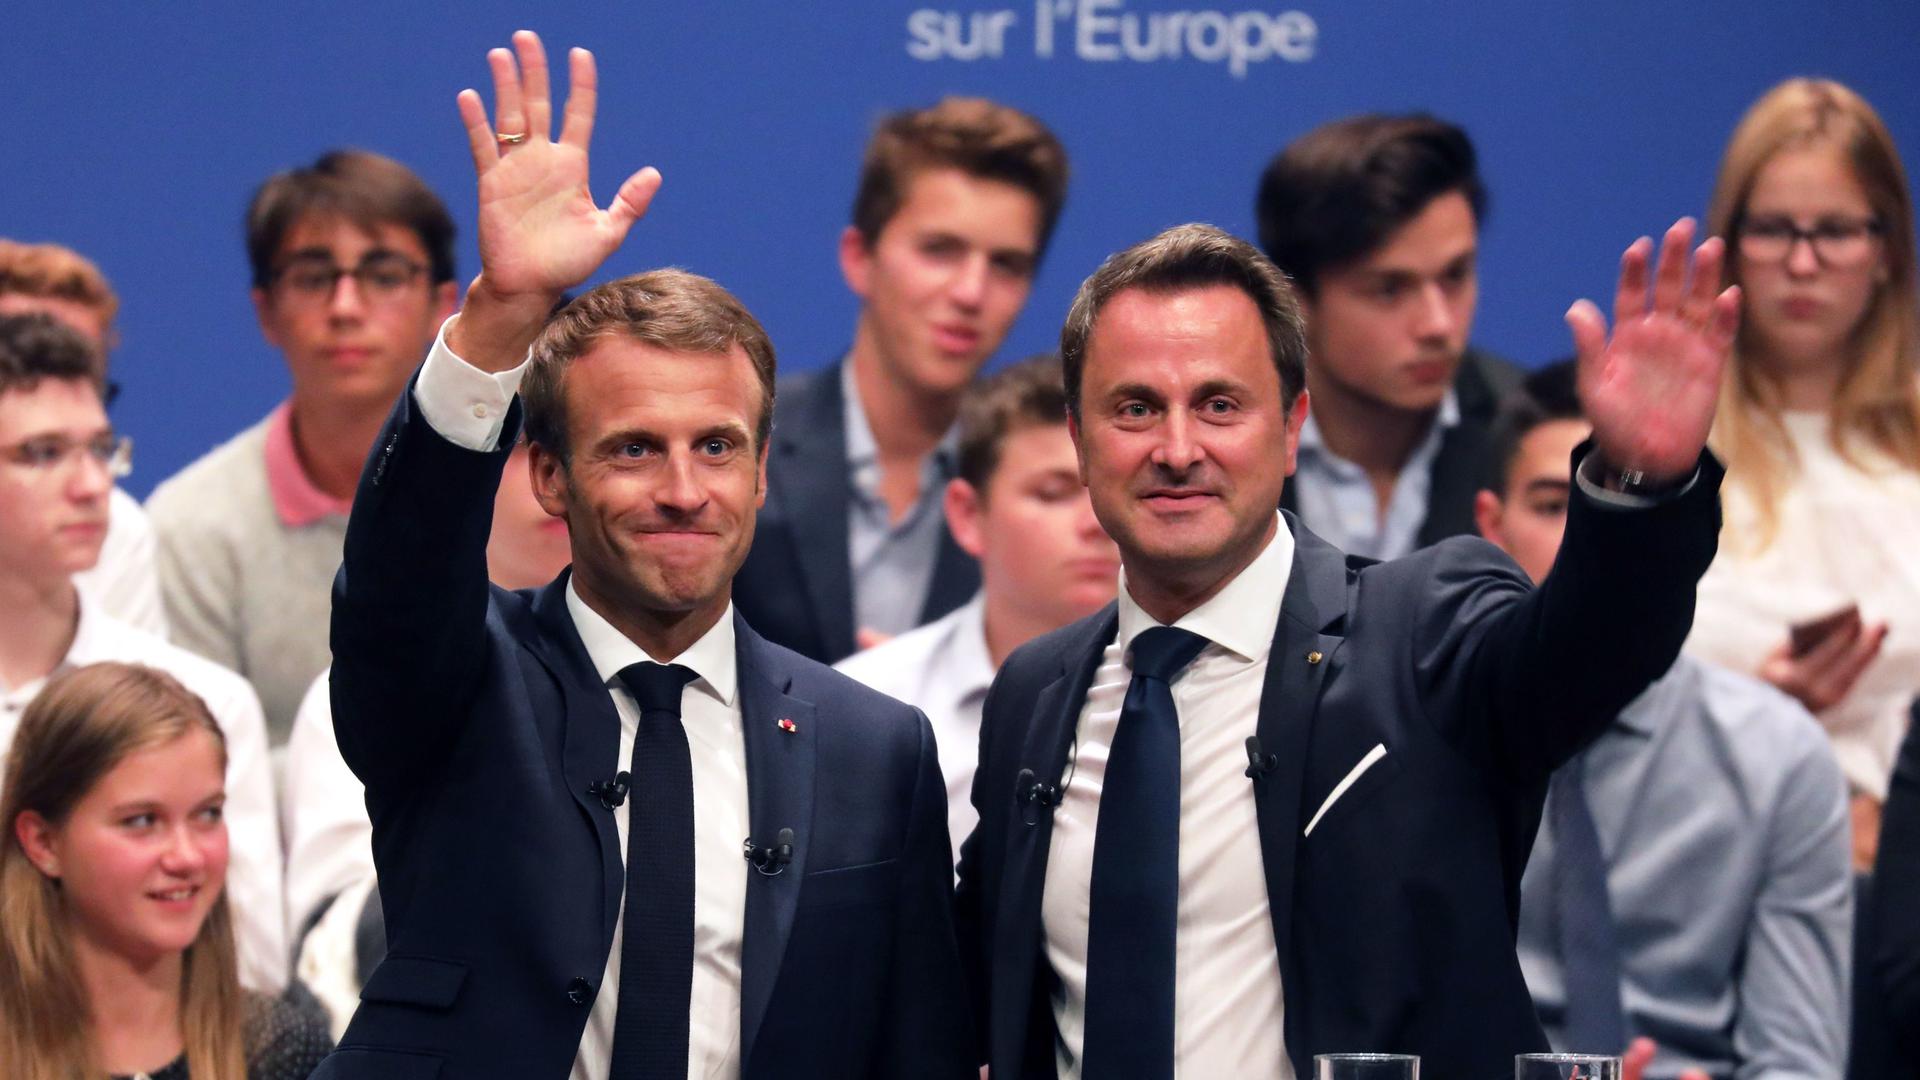 Emmanuel Macron et Xavier Bettel se sont montrés complices et complémentaires dans leurs réponses aux questions des citoyens sur l'Europe et les dissonances entre pays européens.